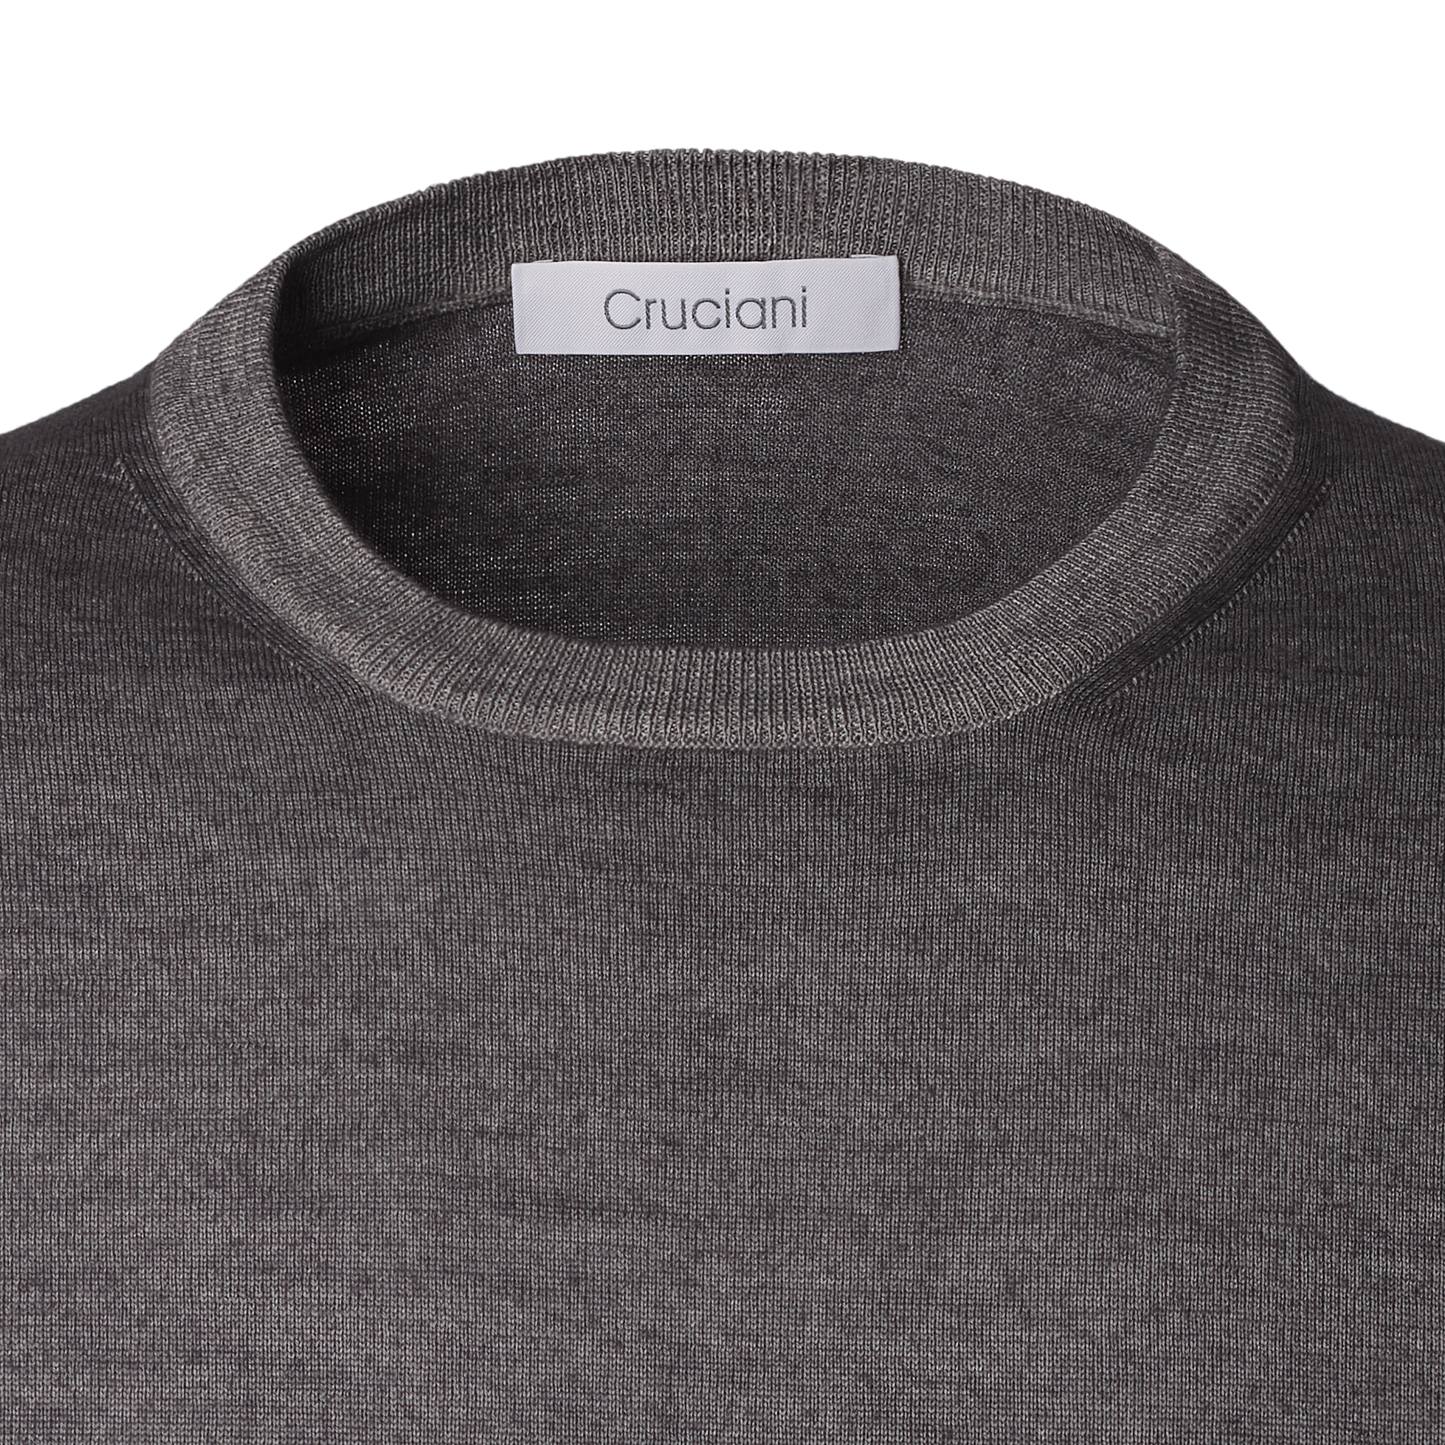 Cruciani Crew-Neck Wool Sweater in Grey - SARTALE